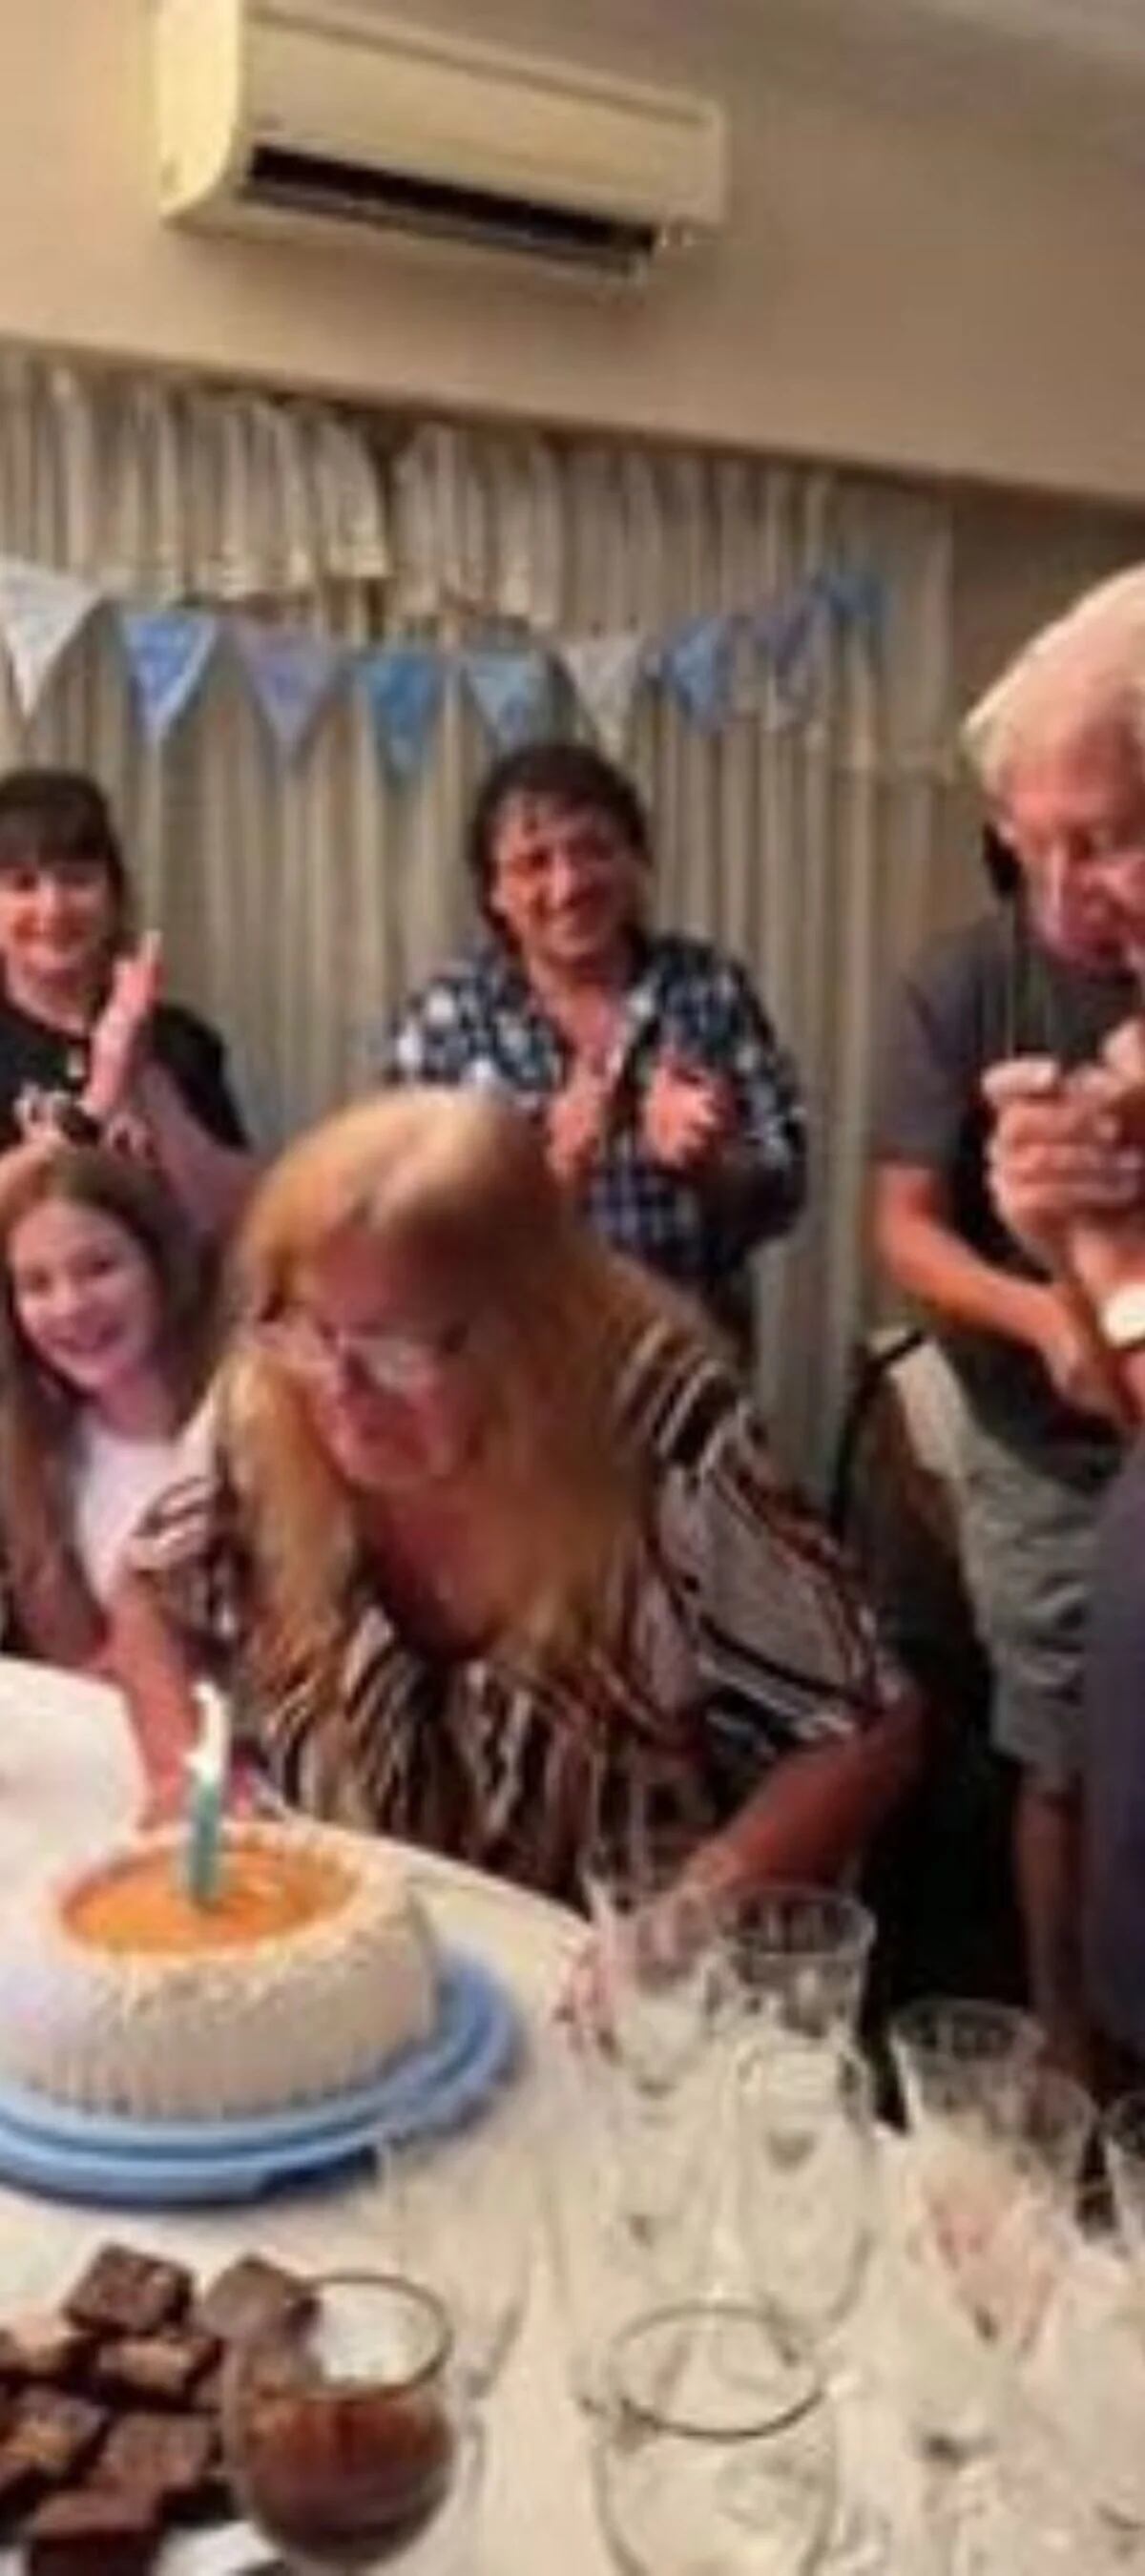 Abuelita apaga las velas de un pastel pensando que era su cumpleaños